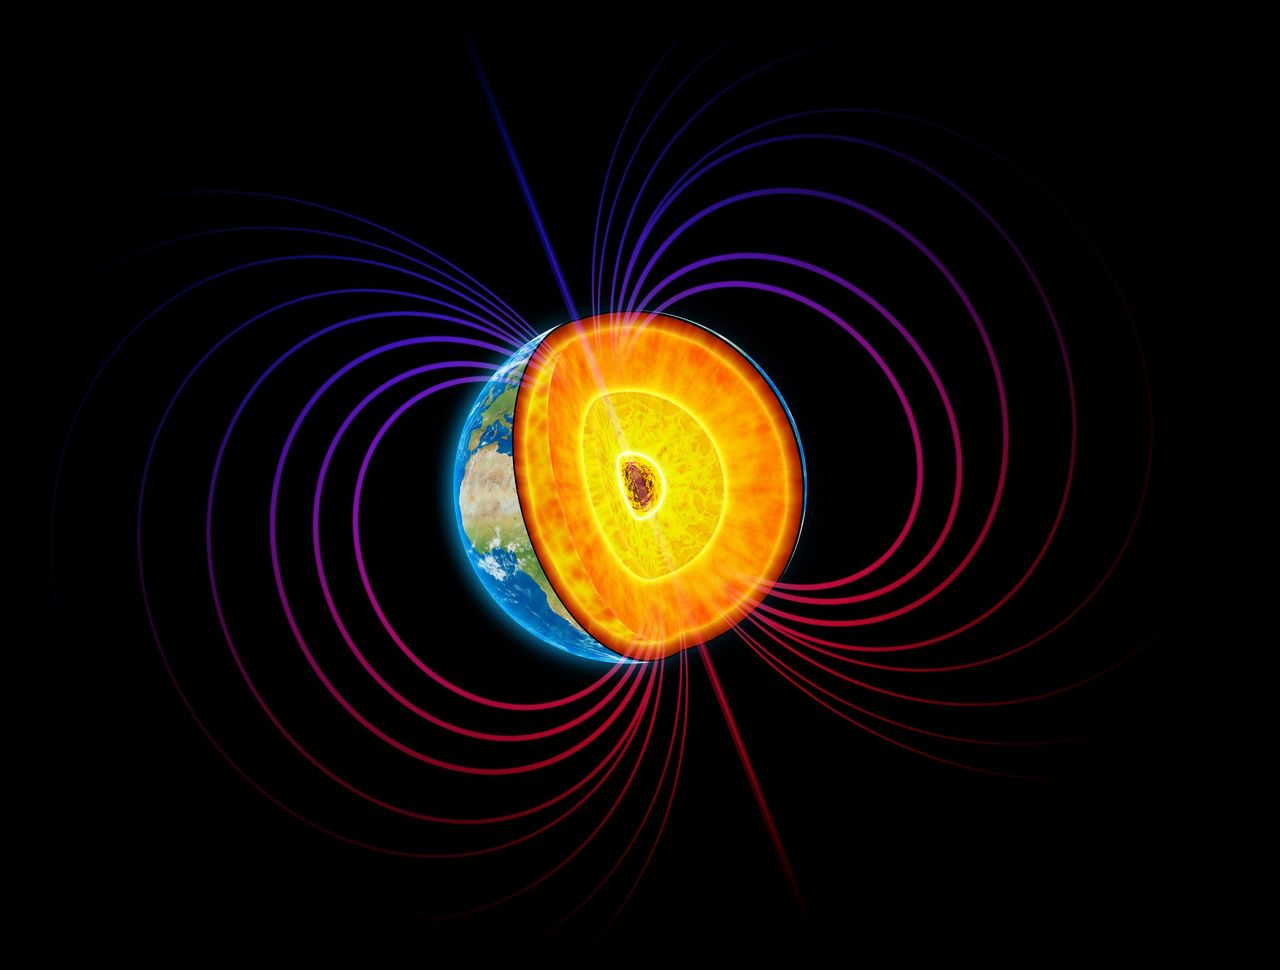 Naukowcy badają pole magnetyczne Ziemi - zdjęcie ilustracyjne